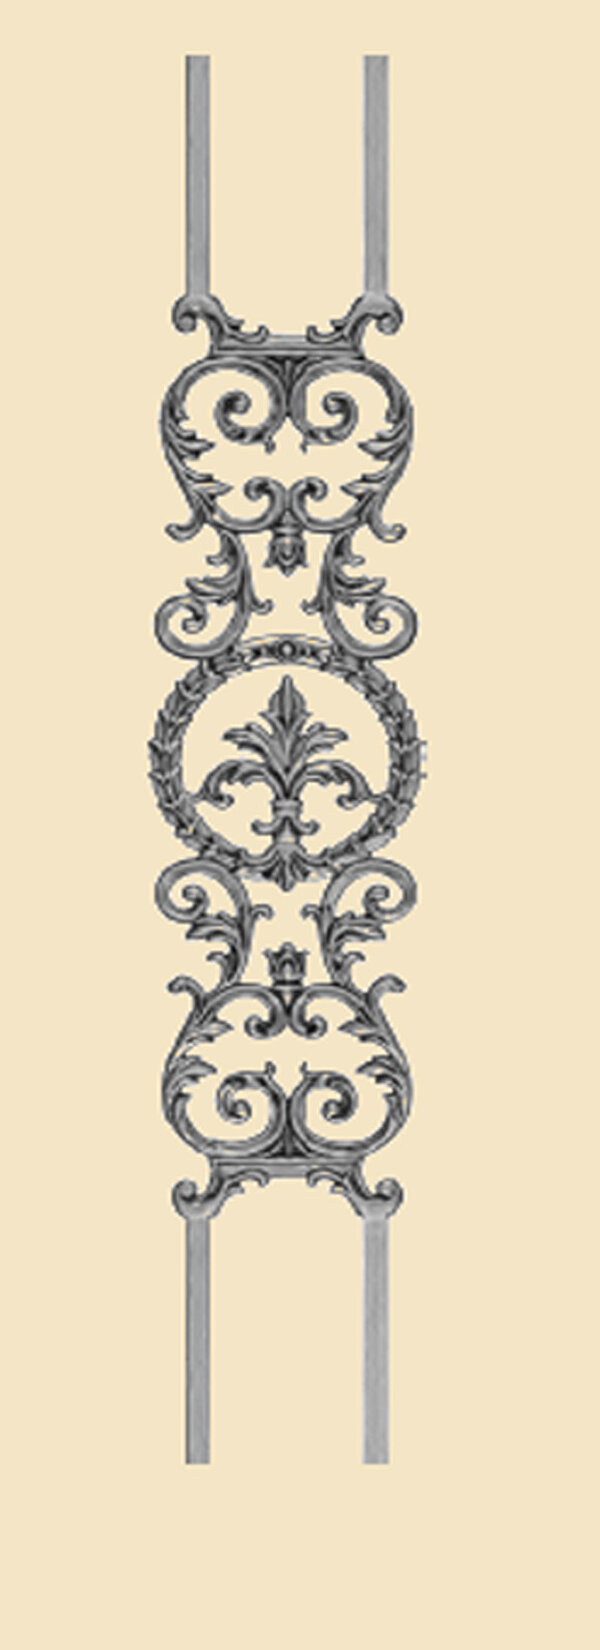 /fundicion-de-arte/objetos-decorativos-de-hierro-fundido/1502-1508